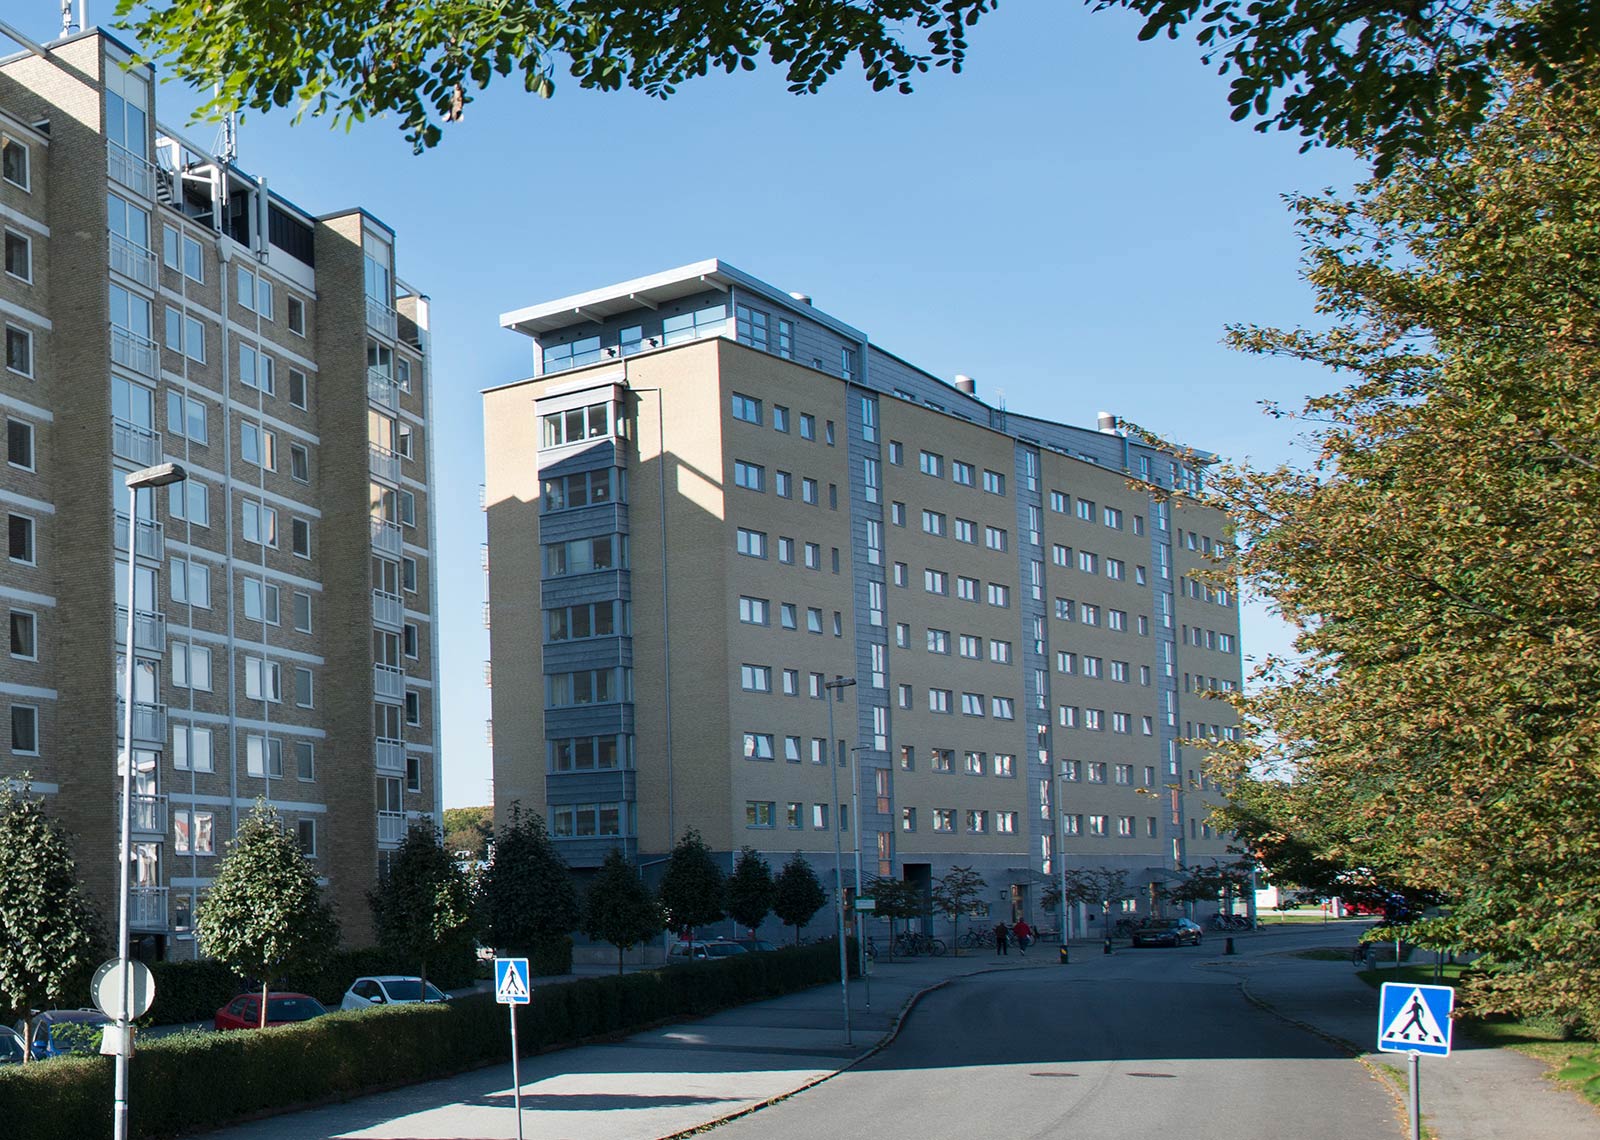 Flerfamiljshuset i nio våningar på Karhögstorg